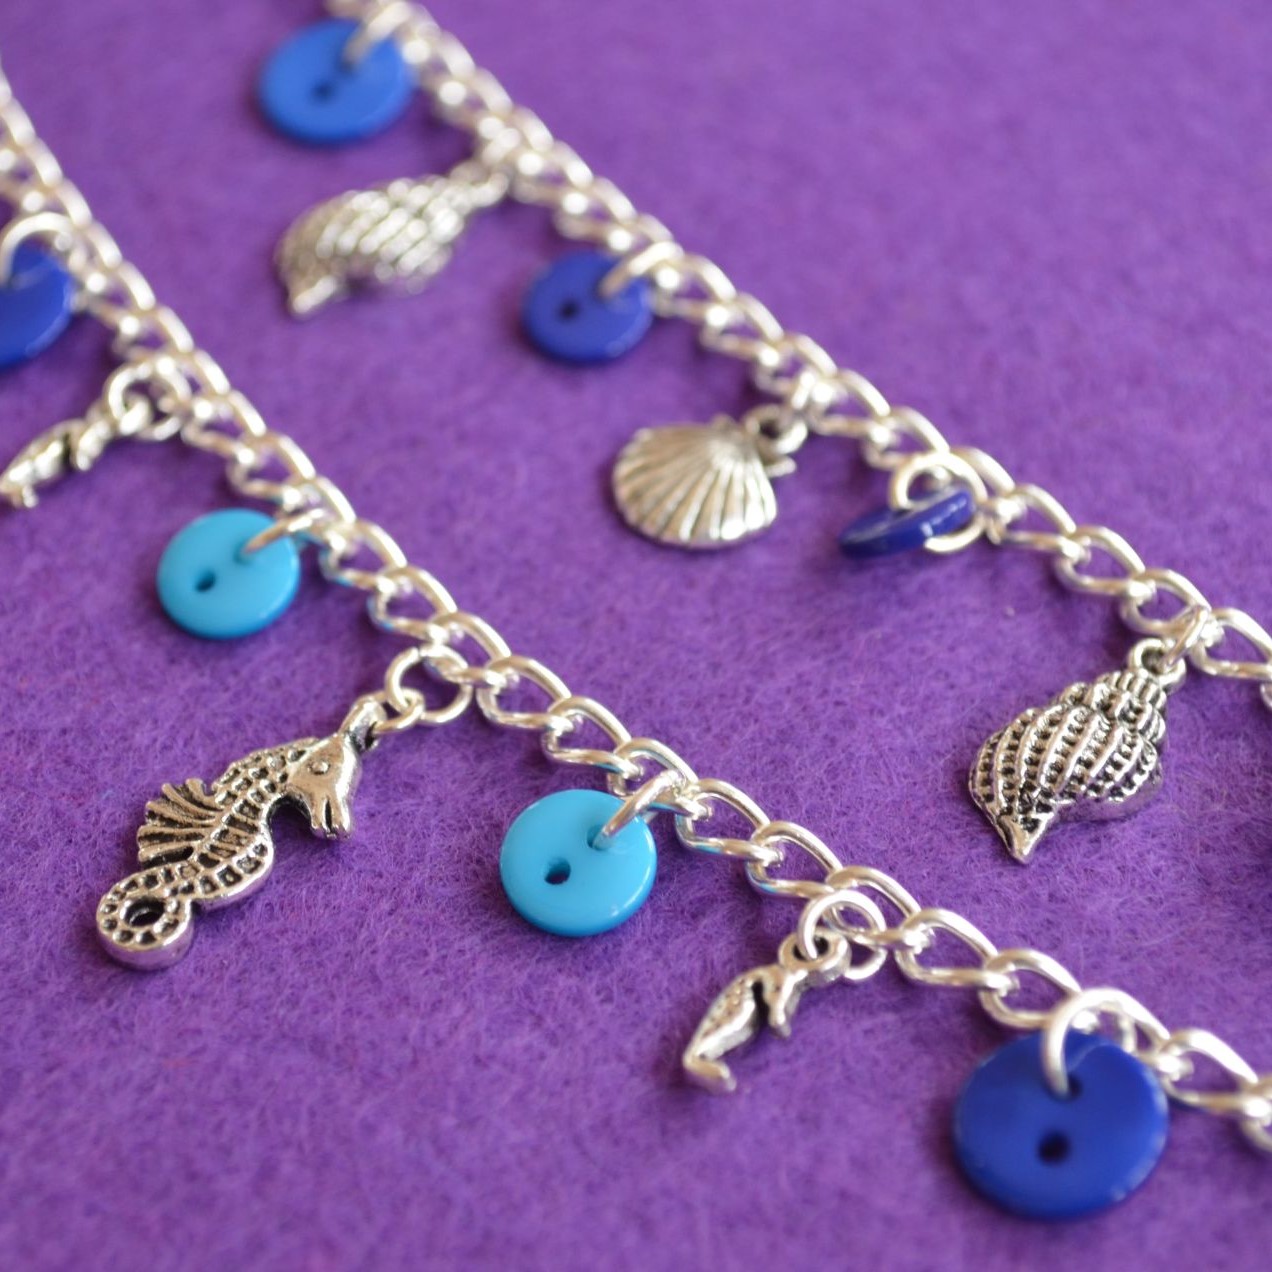 Seahorse Child’s Button Charm Bracelet